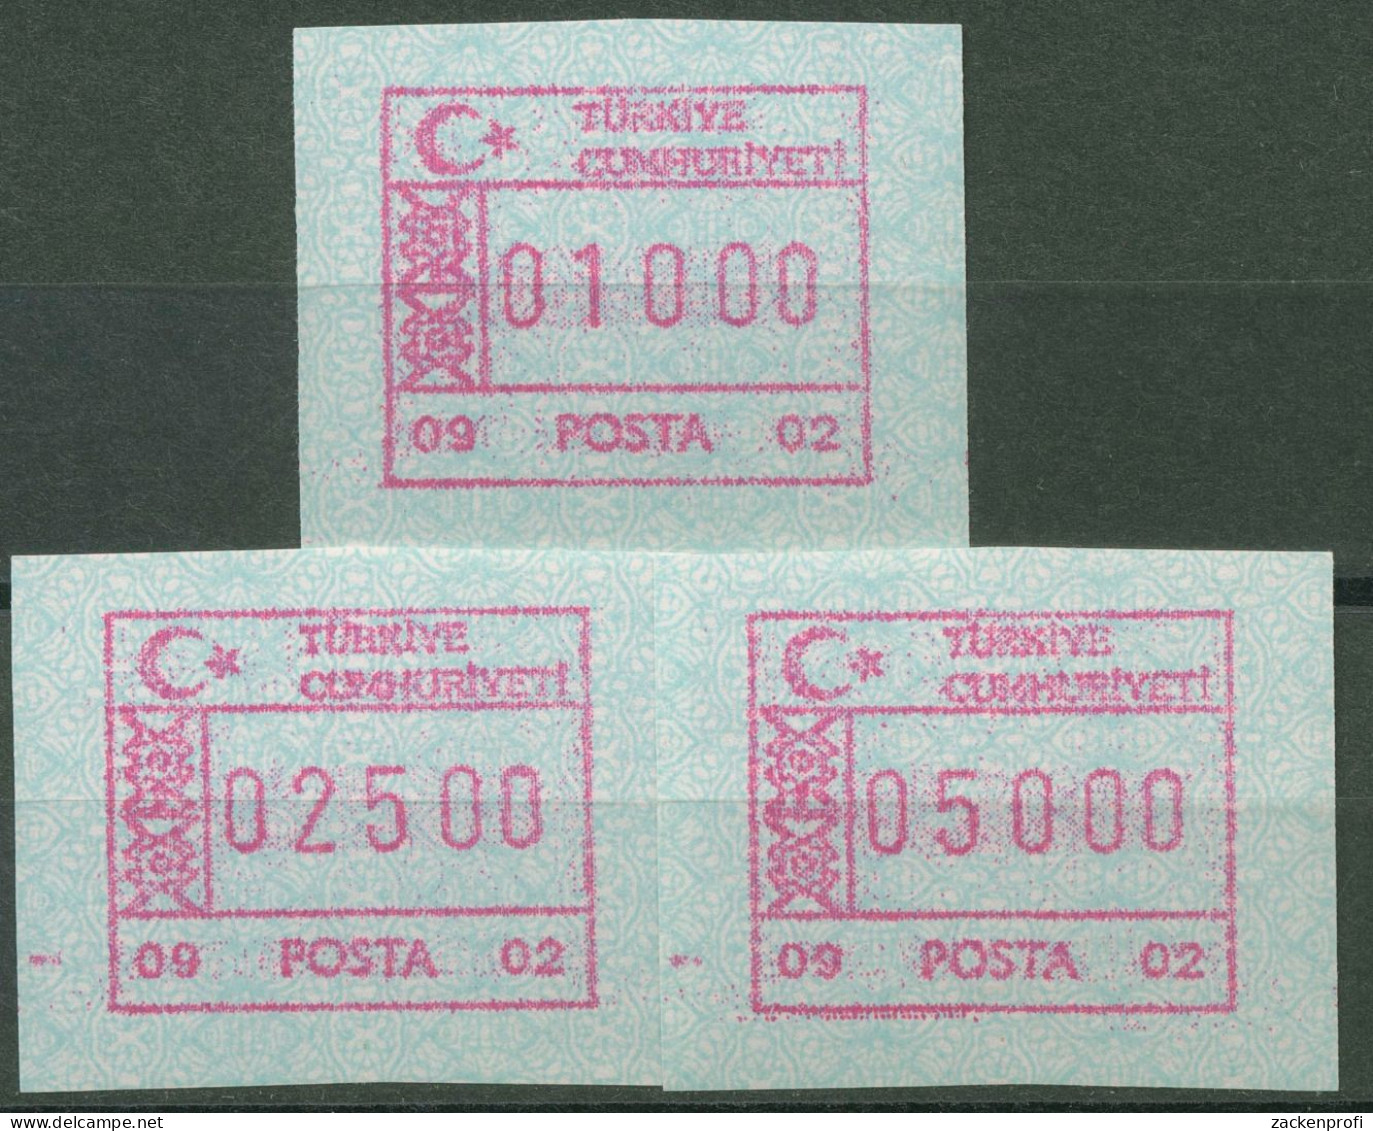 Türkei ATM 1992 Ornamente Automat 09 02, Satz 3 Werte ATM 2.6 S Postfrisch - Distribuidores